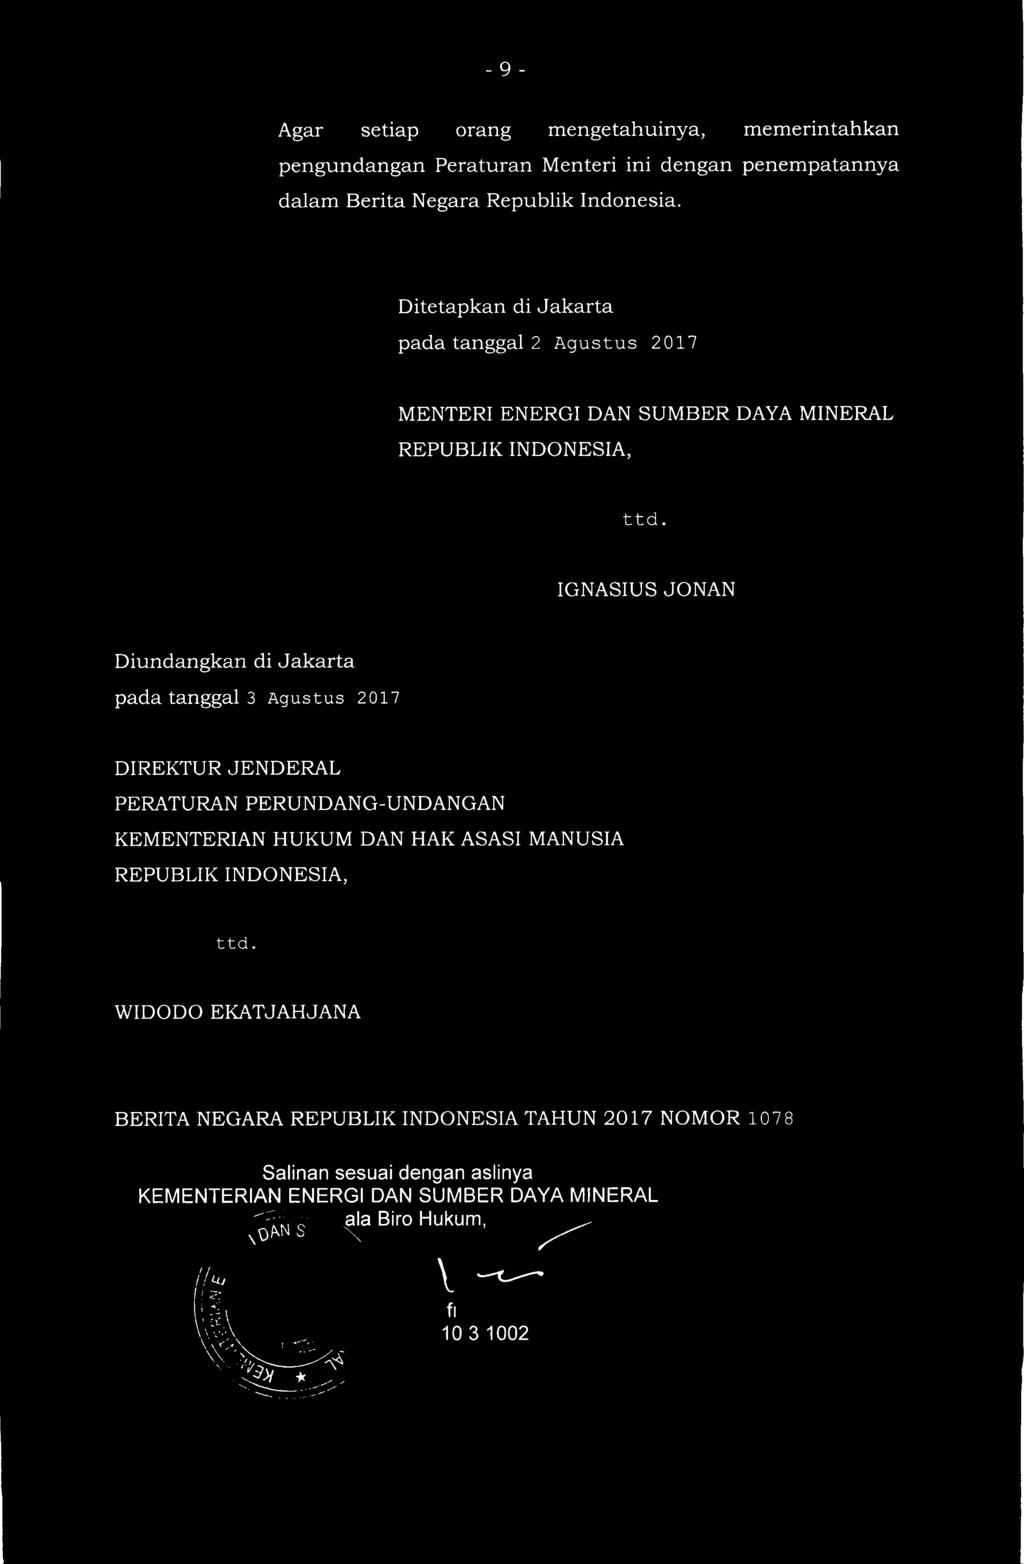 IGNASIUS JONAN Diundangkan di Jakarta pada tanggal 3 Agustus 2017 DIREKTUR JENDERAL PERATURAN PERUNDANG-UNDANGAN KEMENTERIAN HUKUM DAN HAK ASASI MANUSIA